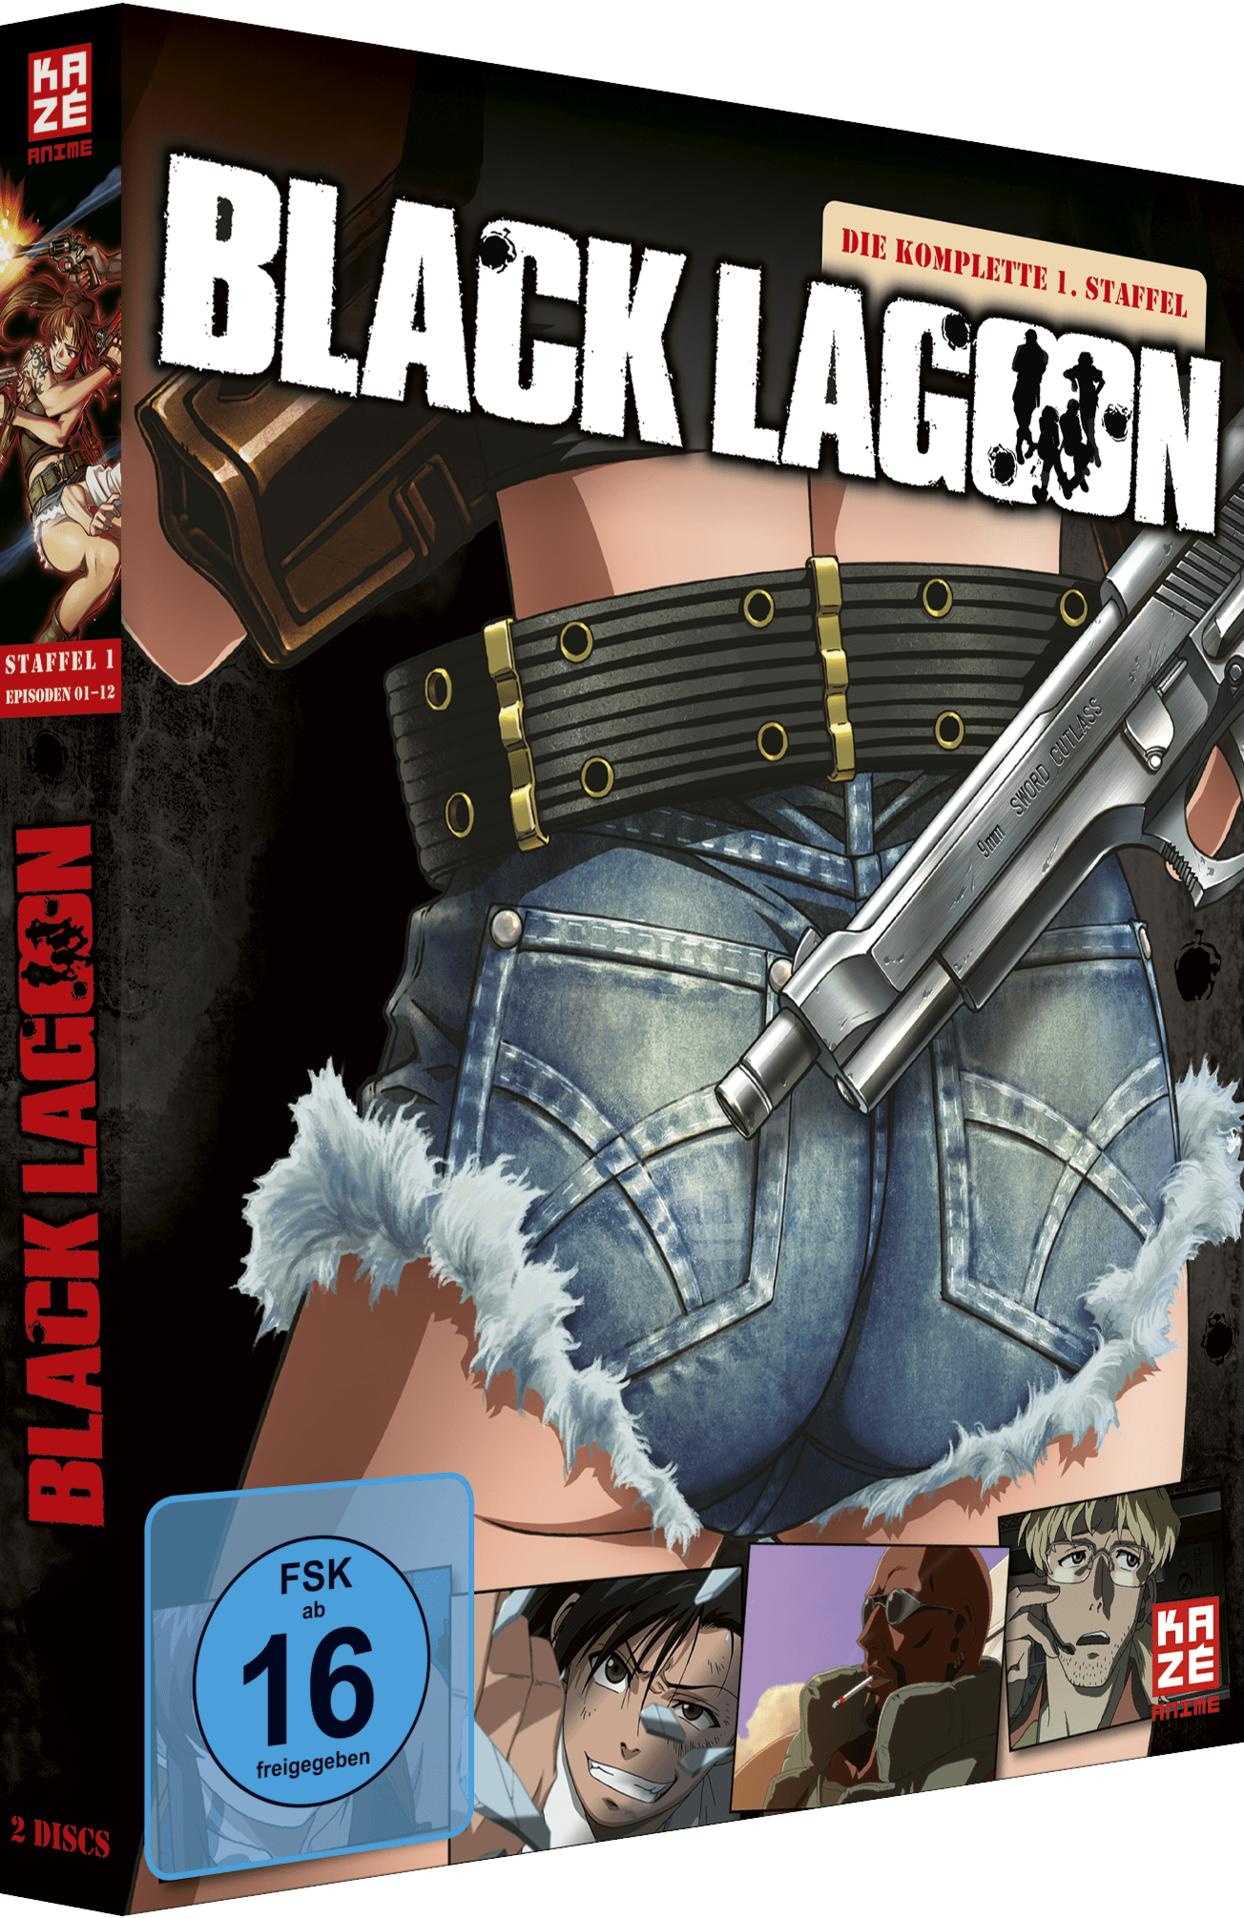 Black Lagoon - Staffel 1 DVD - Gesamtausgabe